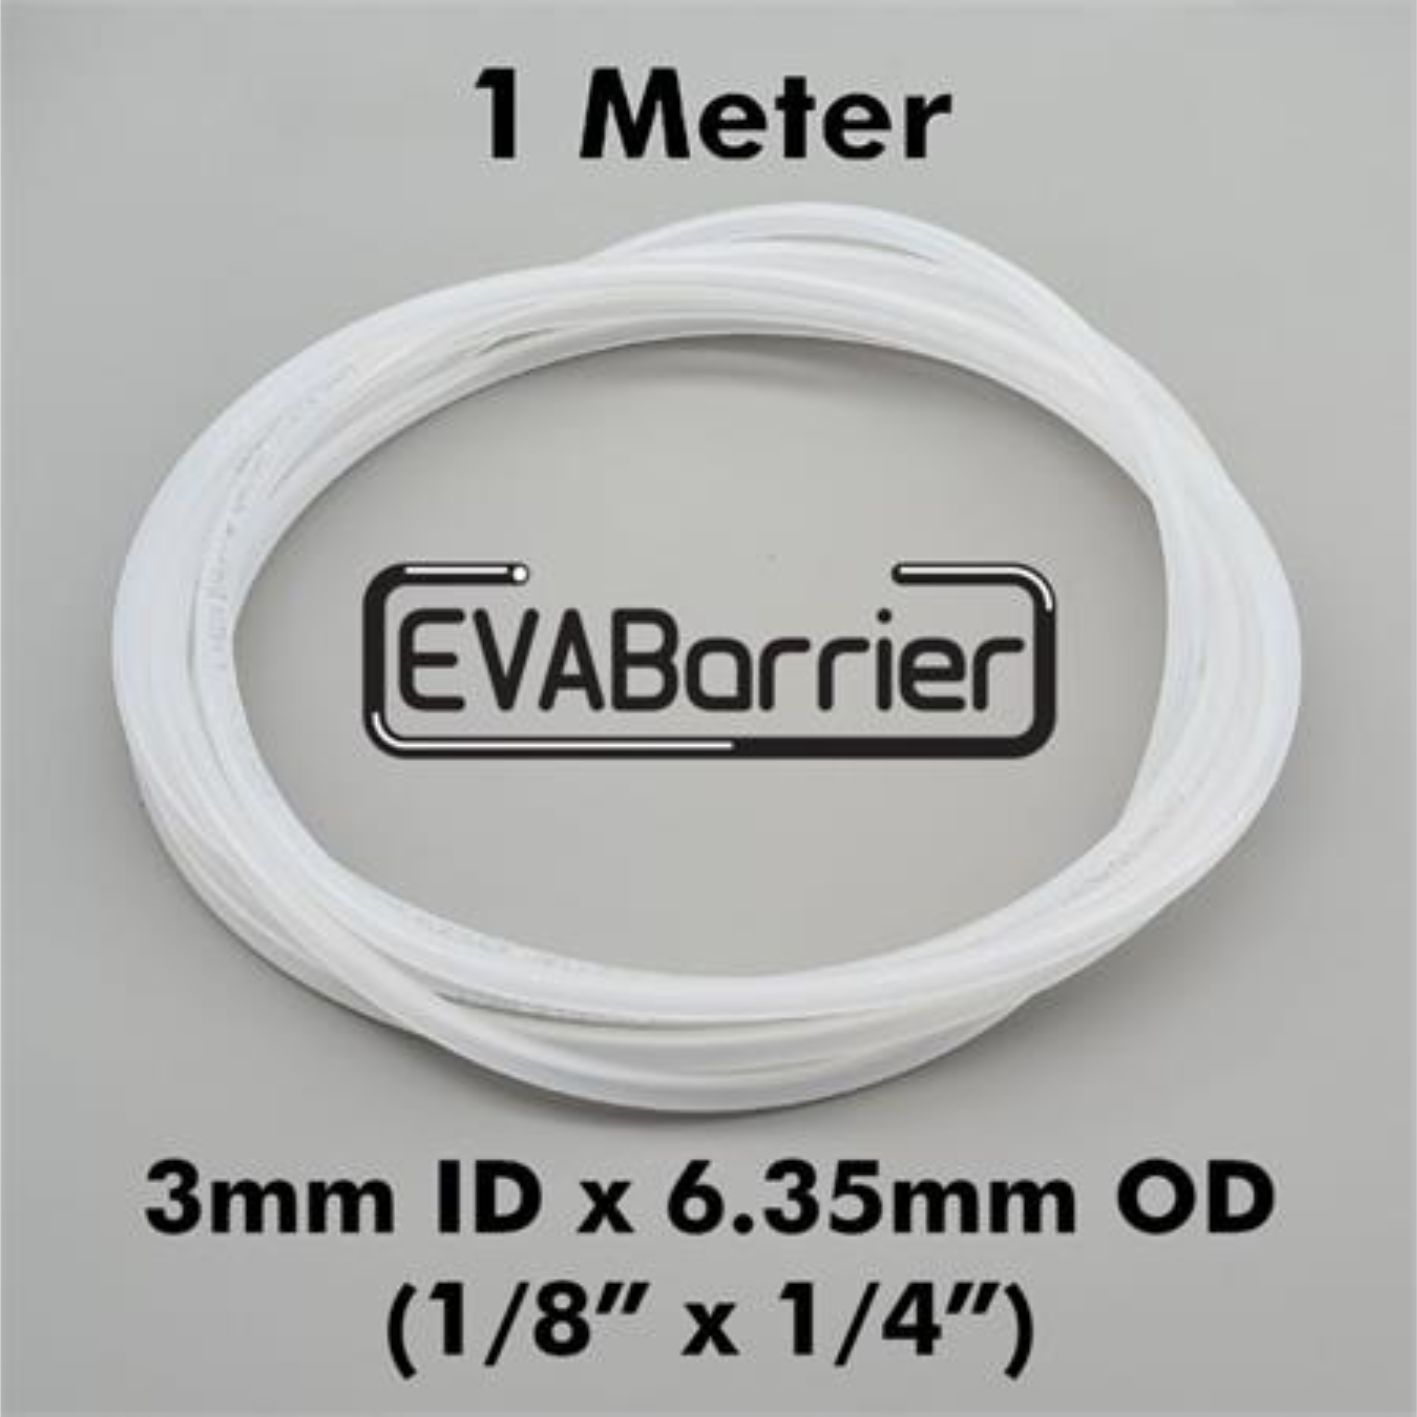 EVABarrier slange 3 mm ID x 6.35mm OD